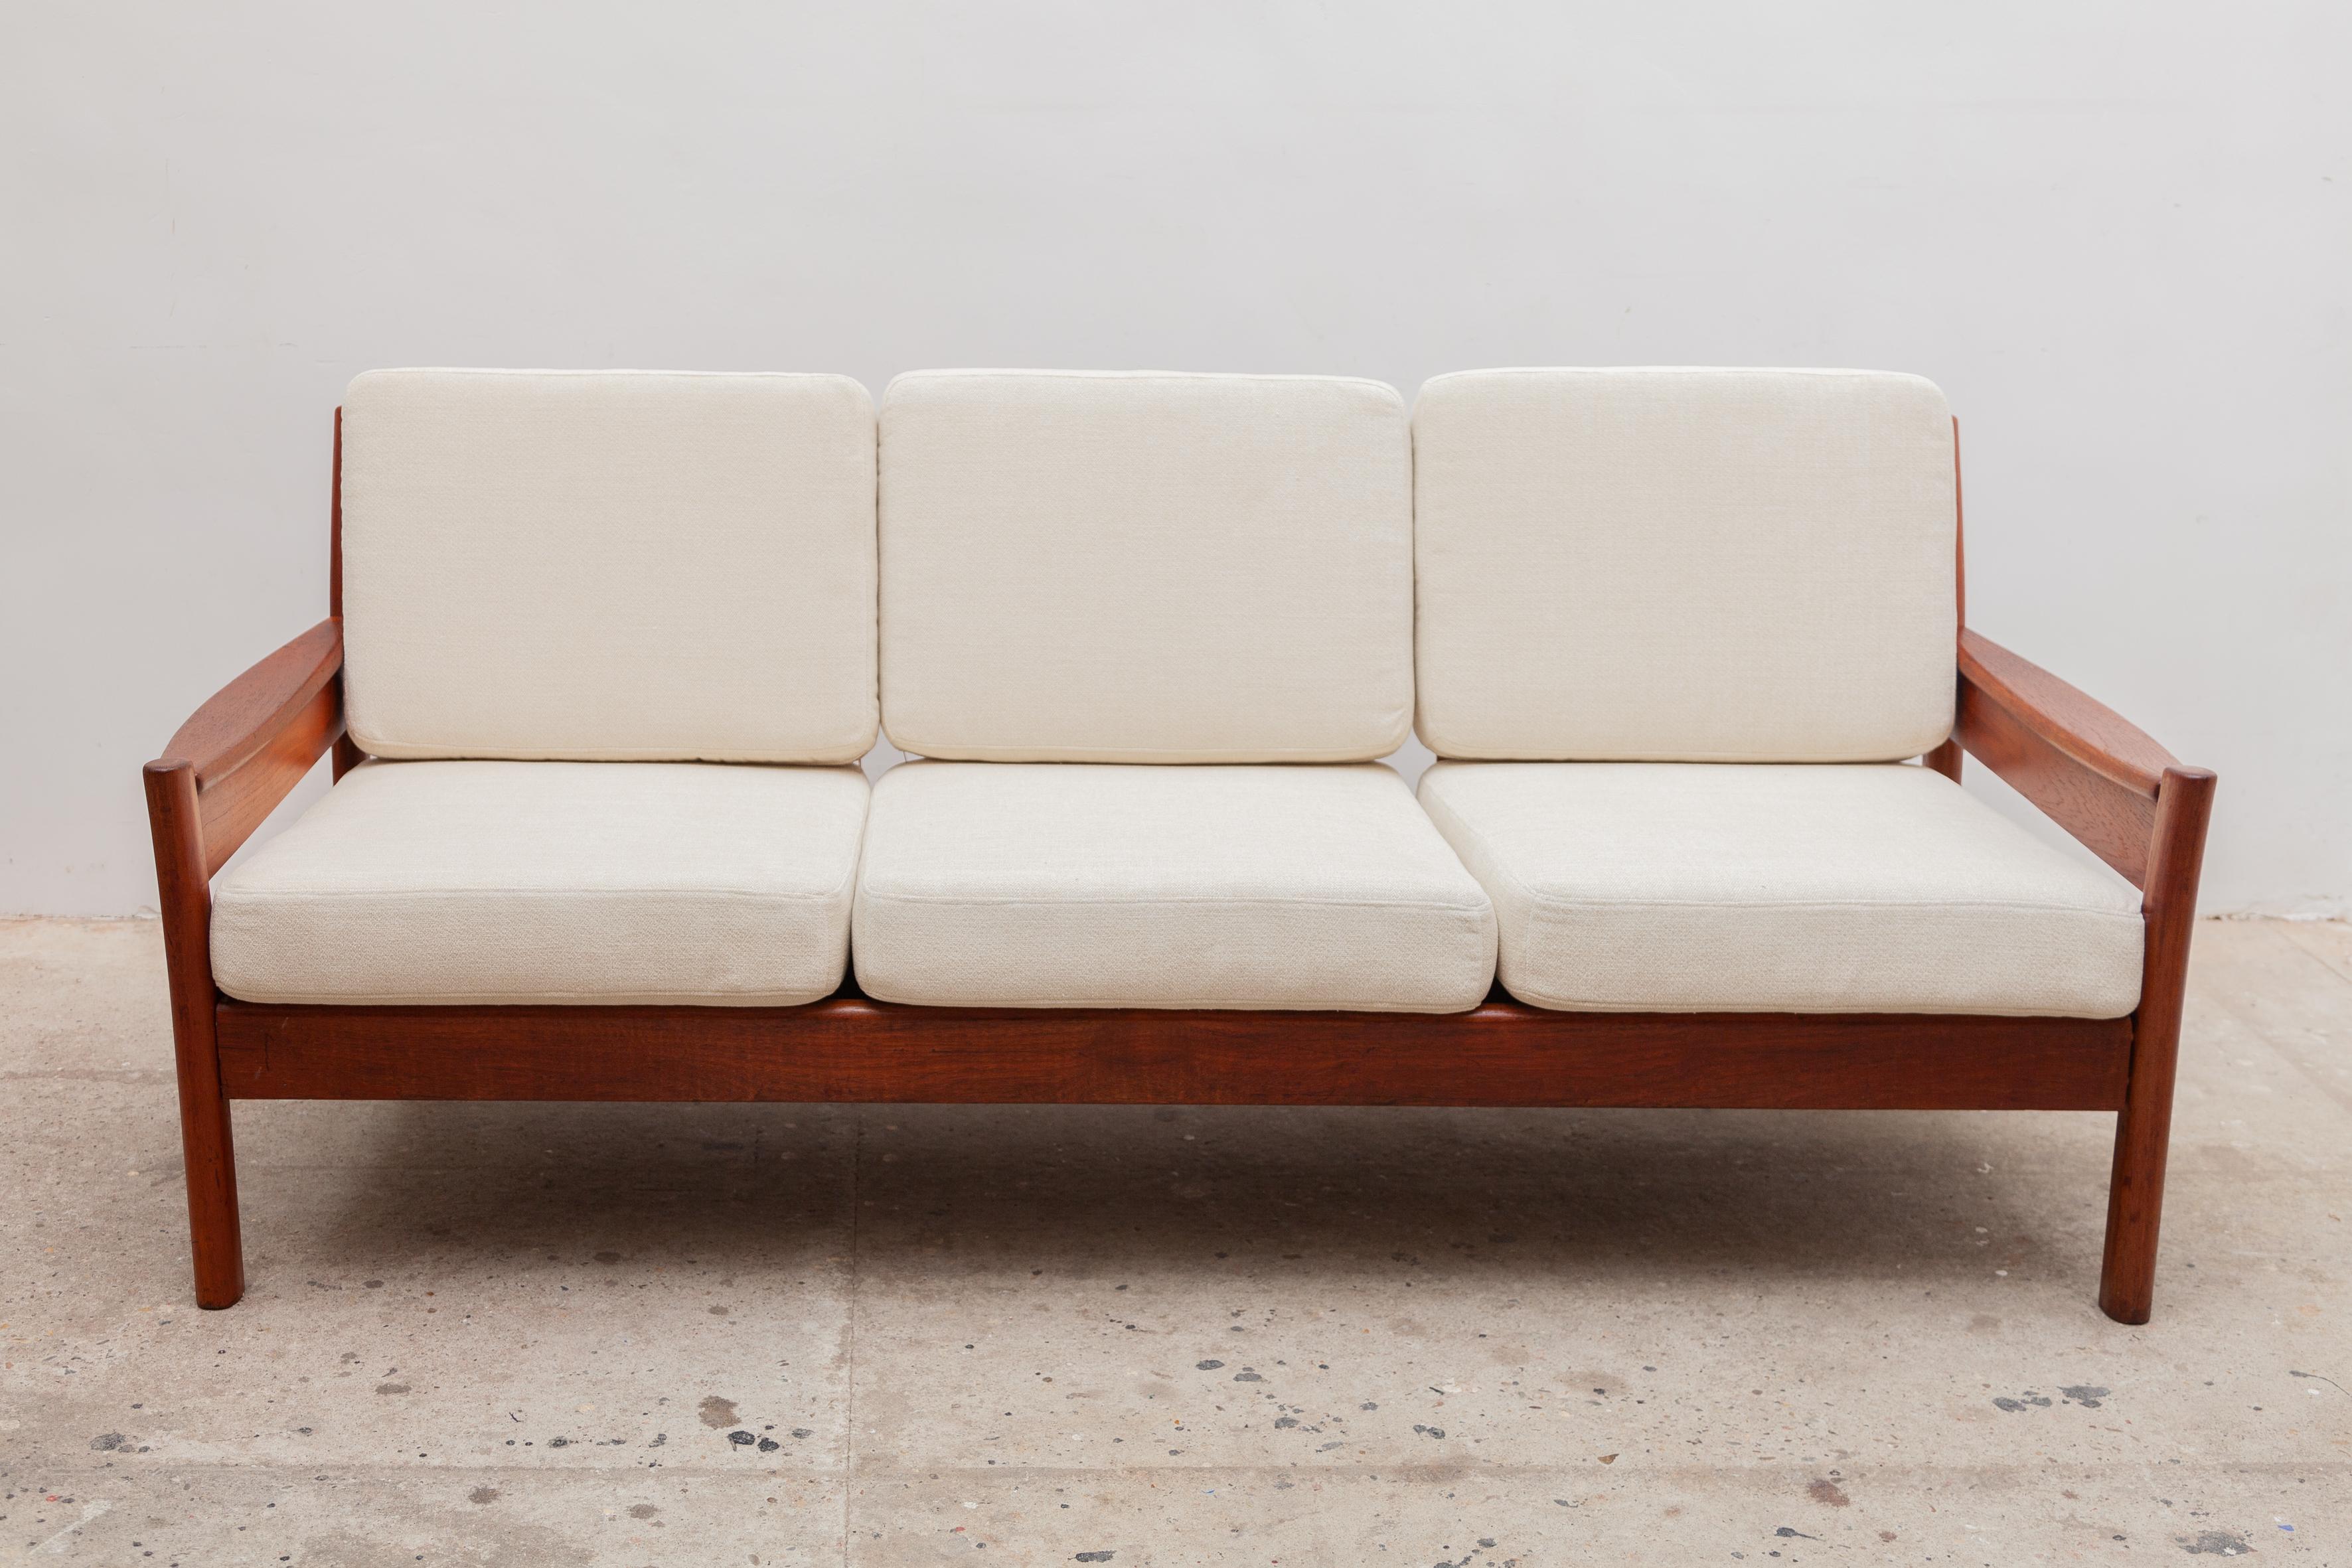 Dreisitziges Vintage-Sofa aus der Mitte des Jahrhunderts von Dyrlund, Dänemark. Elegantes Gestell aus massivem Teakholz mit cremefarbener, gewebter Polsterung aus neuer Wolle.
Abmessungen: 190 B x 70 H x 75 T cm, Sitzhöhe 41 cm.
 